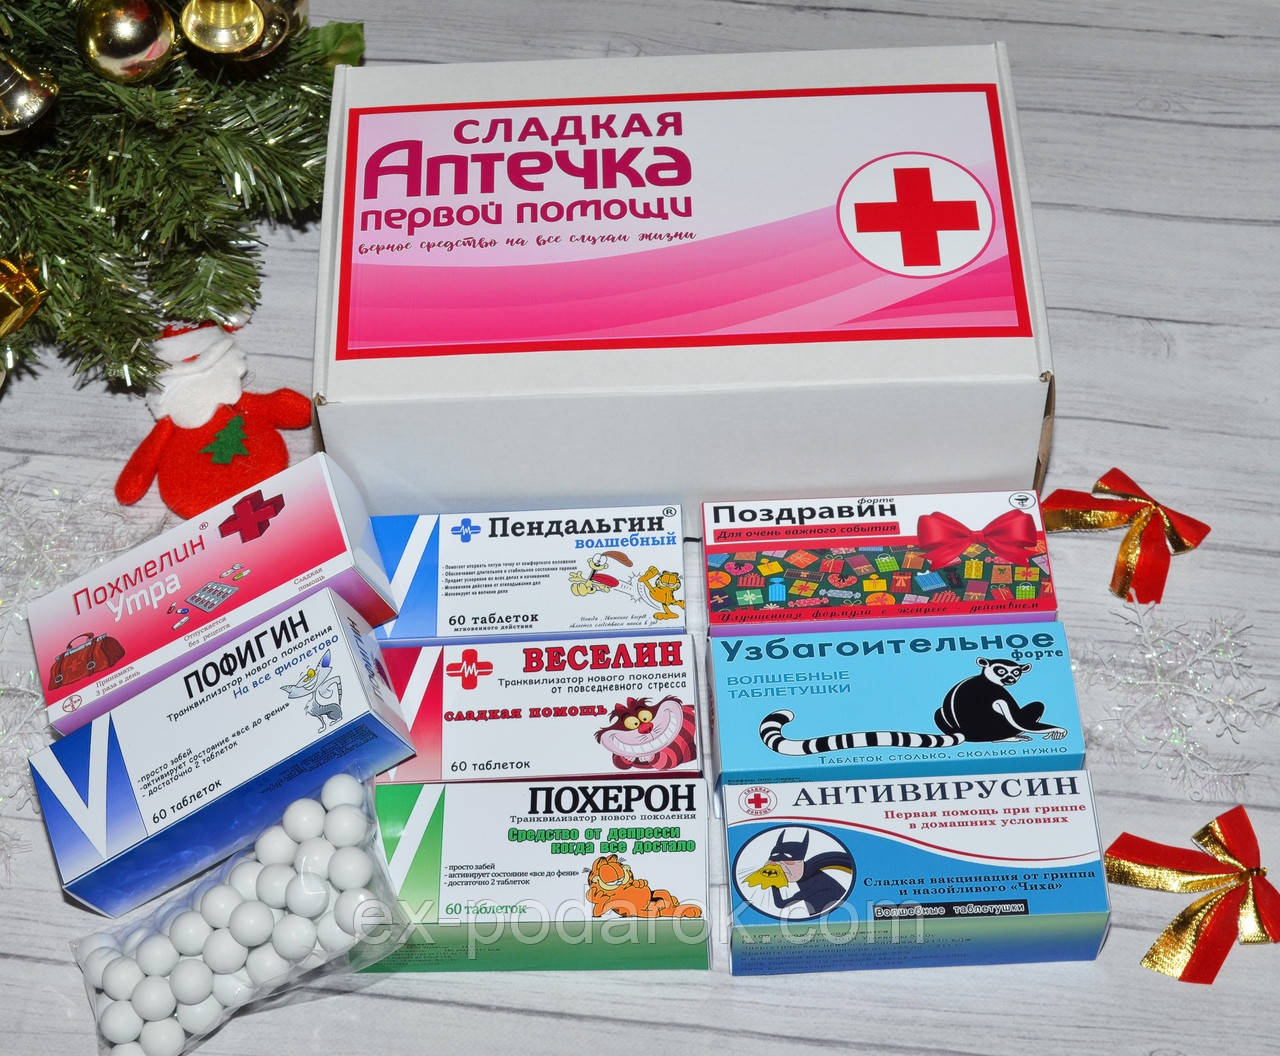 

Сладкая юморная аптечка. Поздравлять нужно с юмором))) 8 упаковок